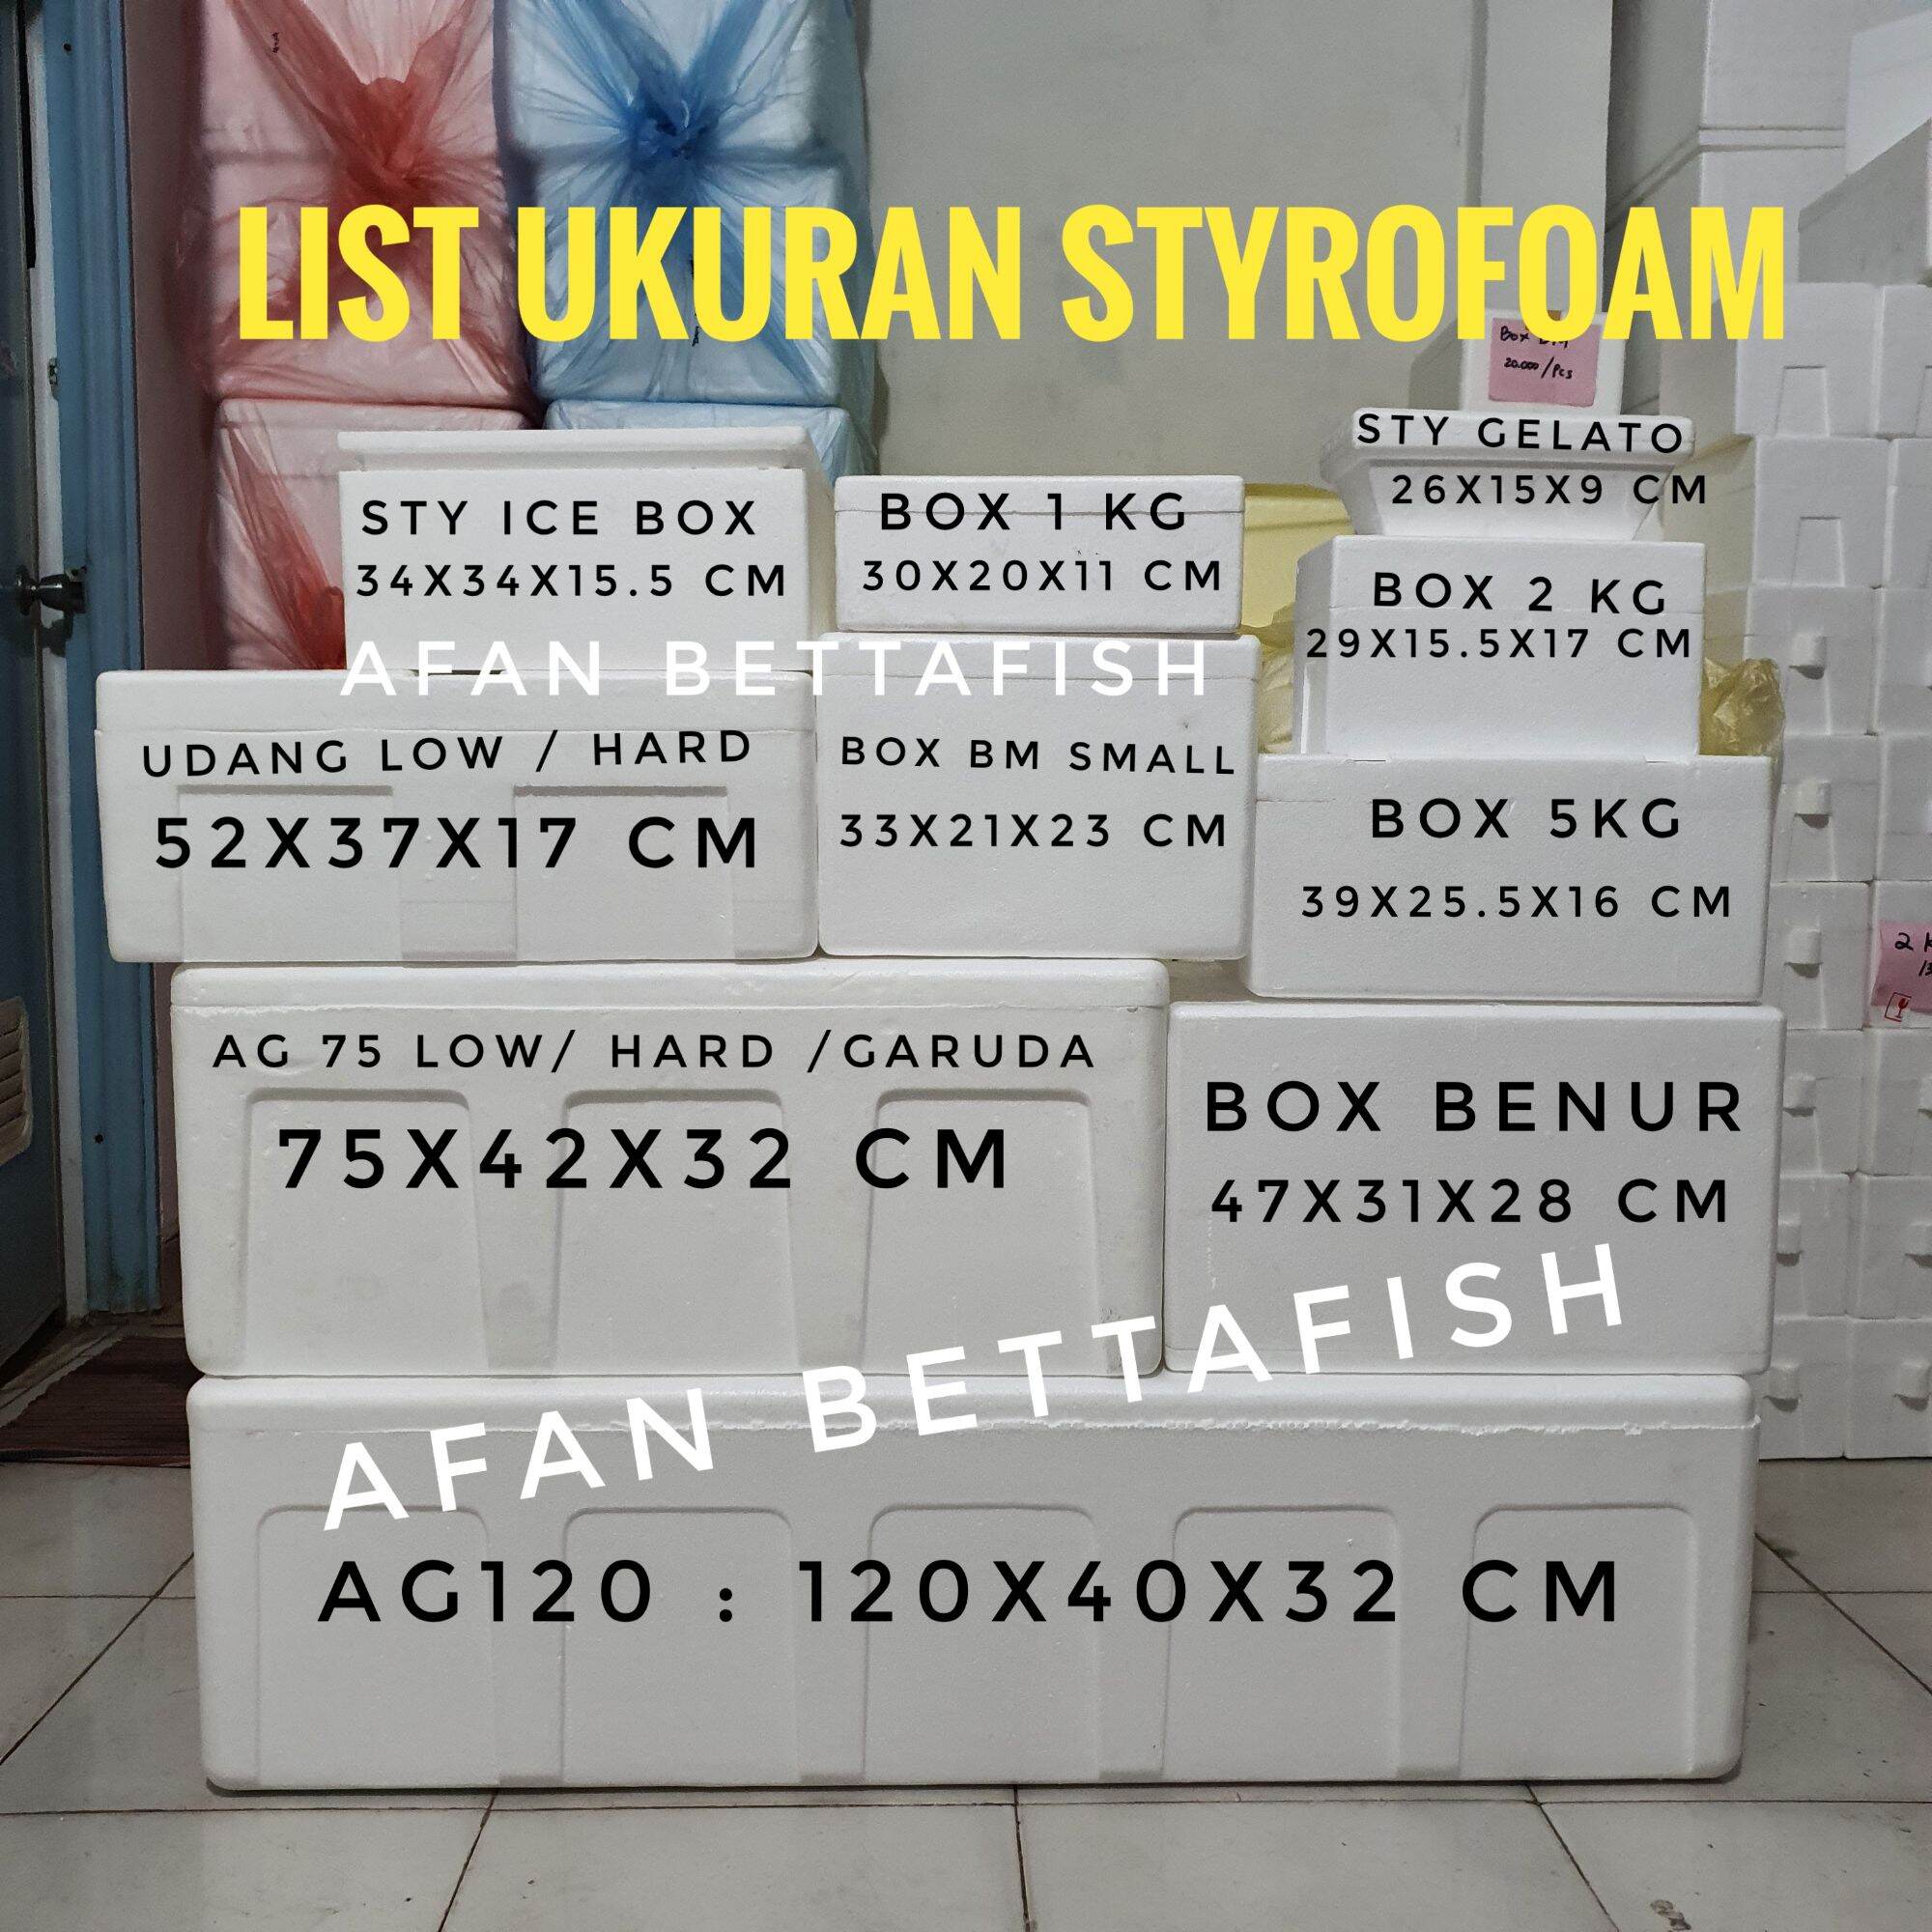 Styrofoam Box 2kg / Styrofoam Breeding / Frozen Food